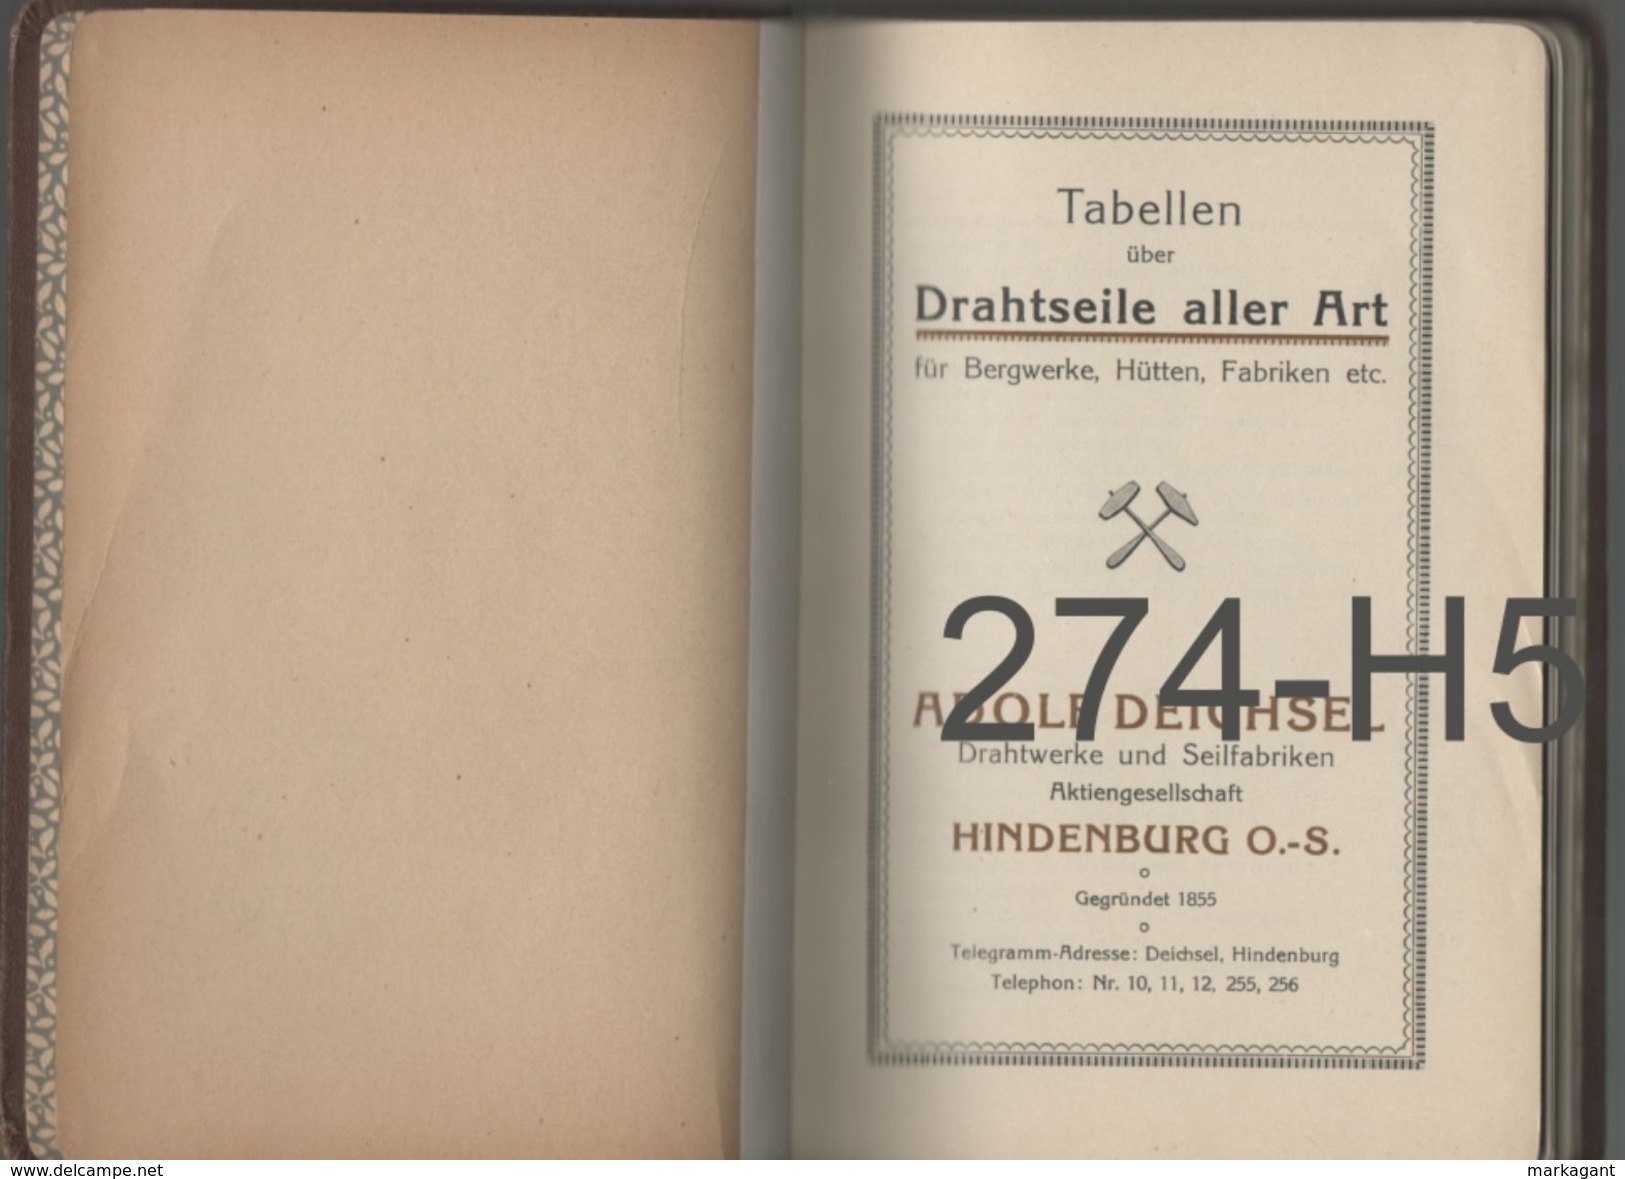 ADOLF DEICHSEL DRAHTWERKE UND SEILFABRIKEN / TABELLEN - Kataloge